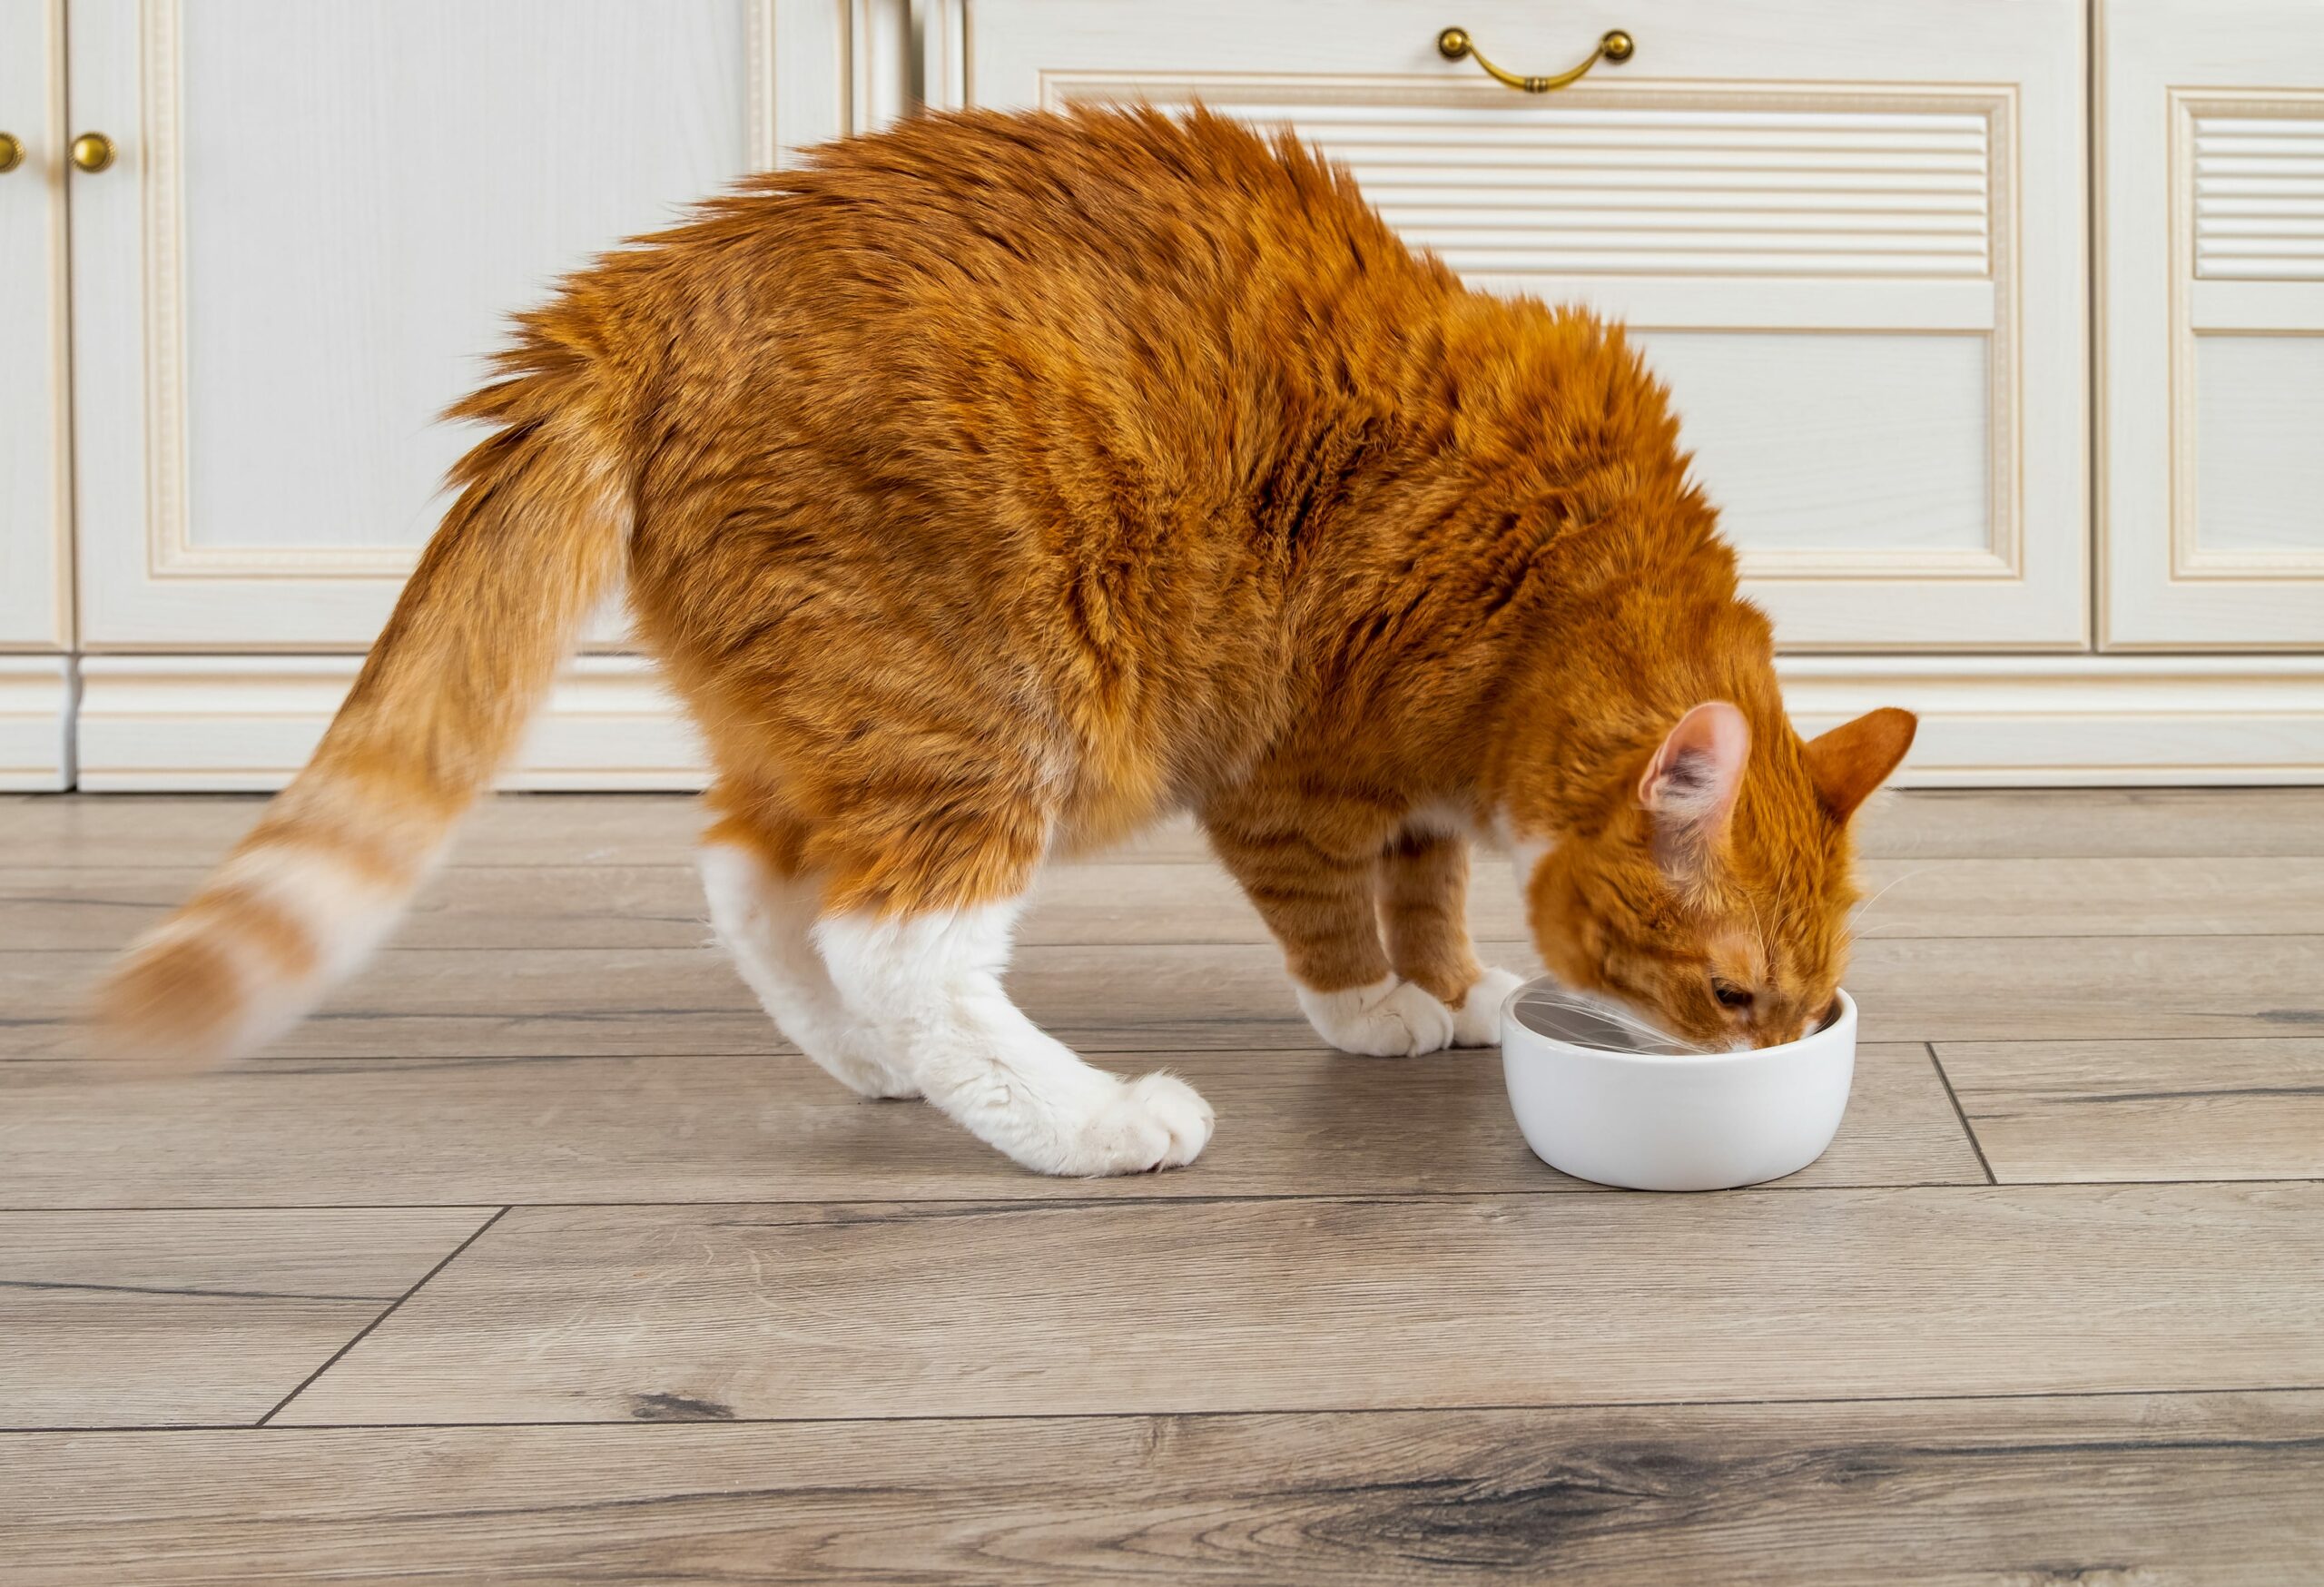 ginger cat eating breakfast from white bowl on wooden floor